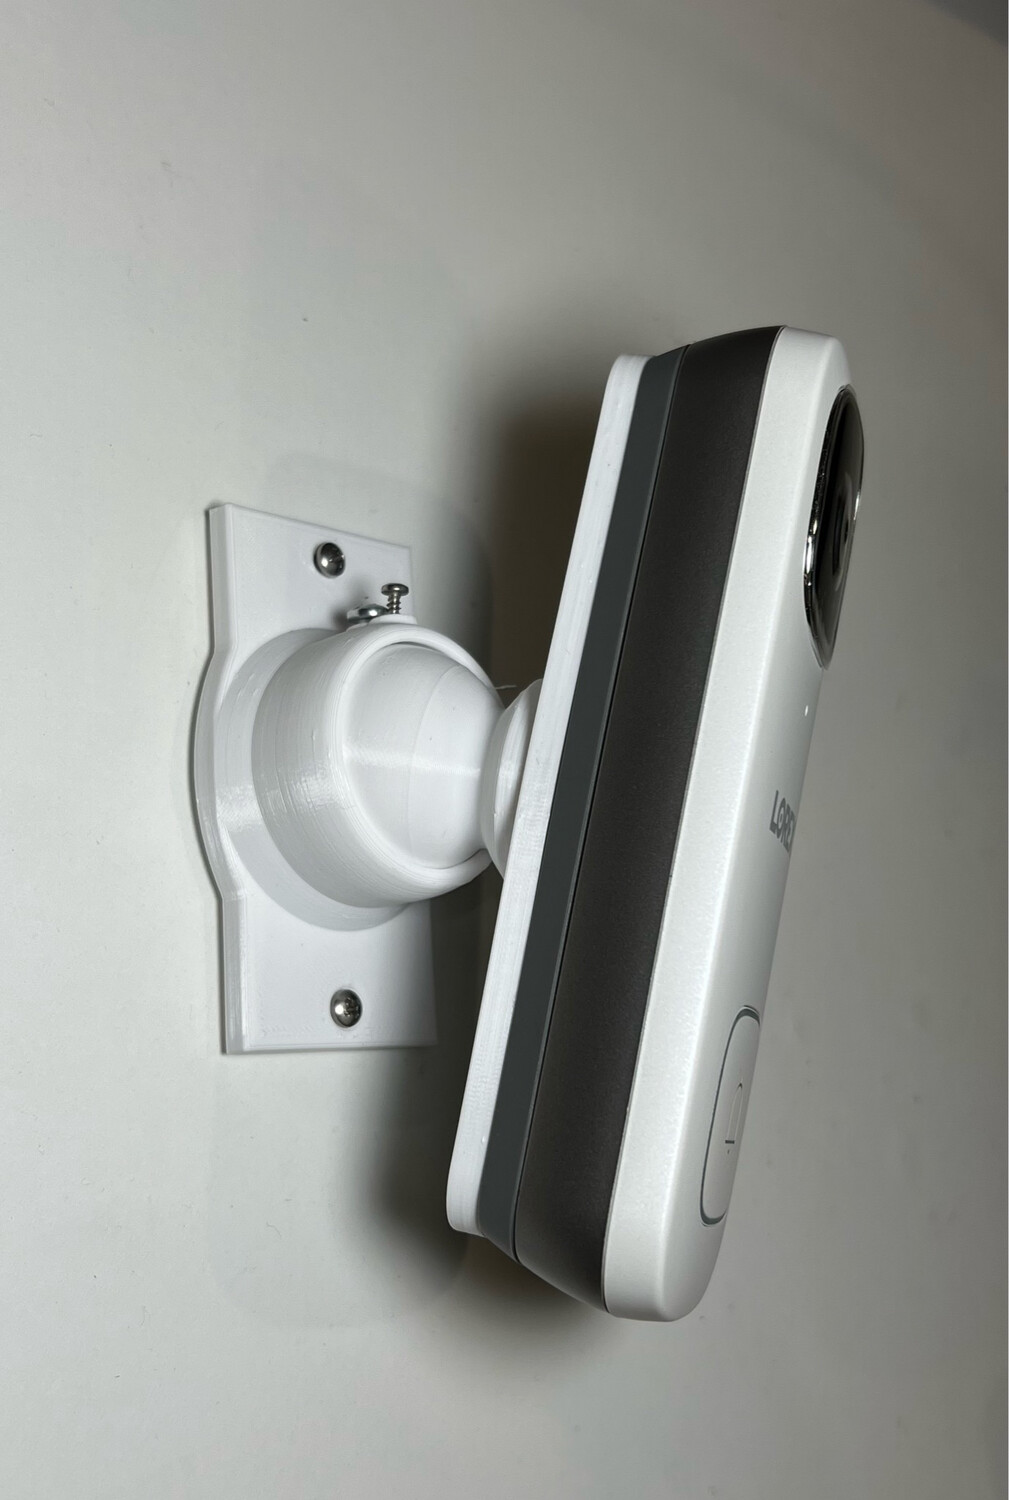 Adjustable Lorex 4k Doorbell 0-35 Degree Swivel Tilting Mount Bracket